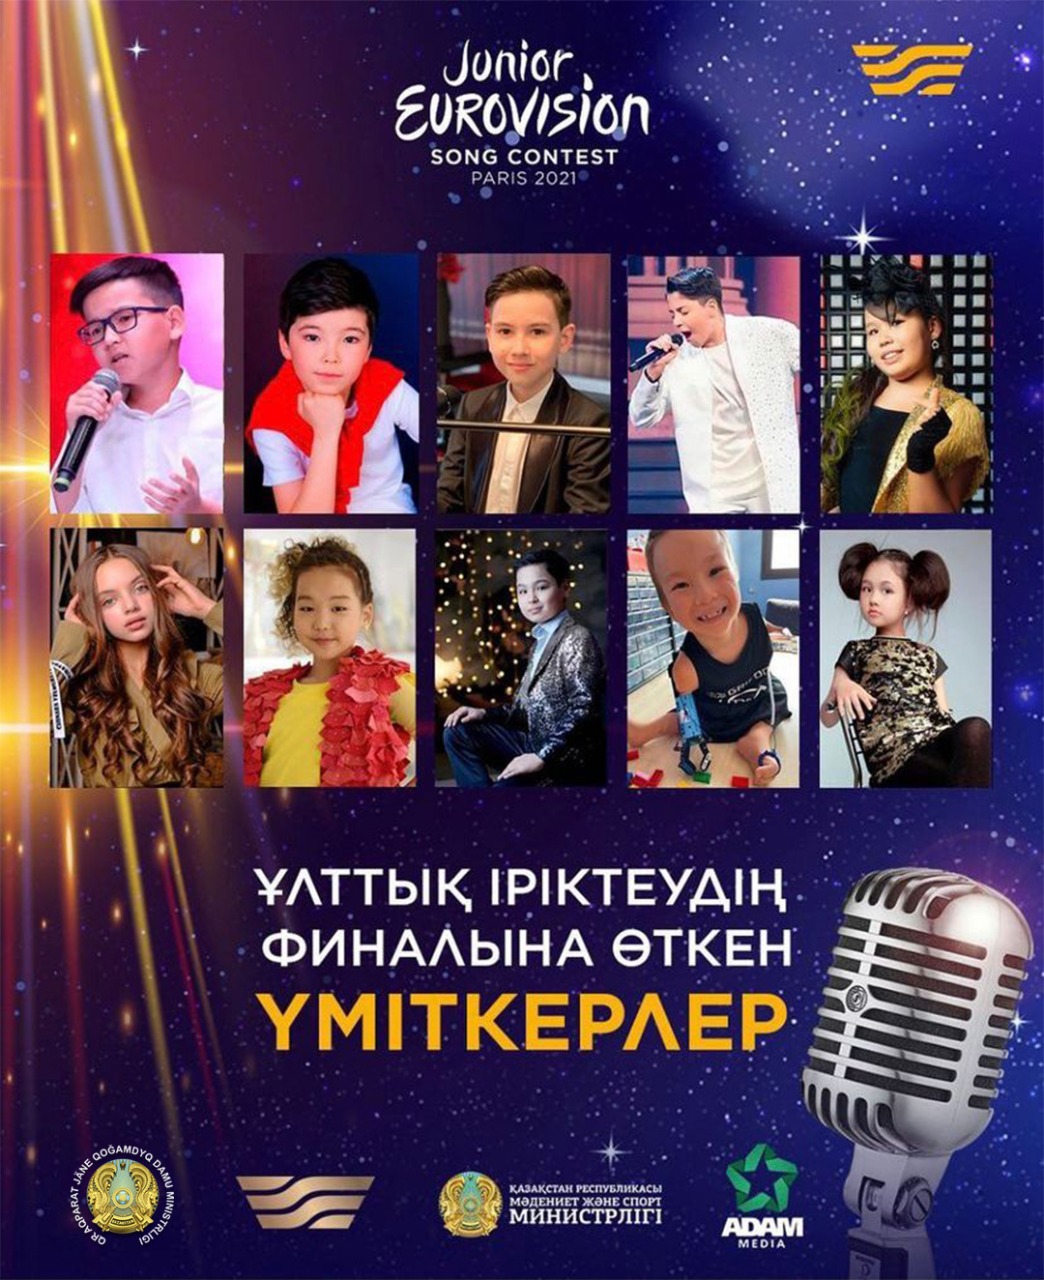 «Junior Eurovision 2021»: Ұлттық іріктеудің 10 финалисті анықталды